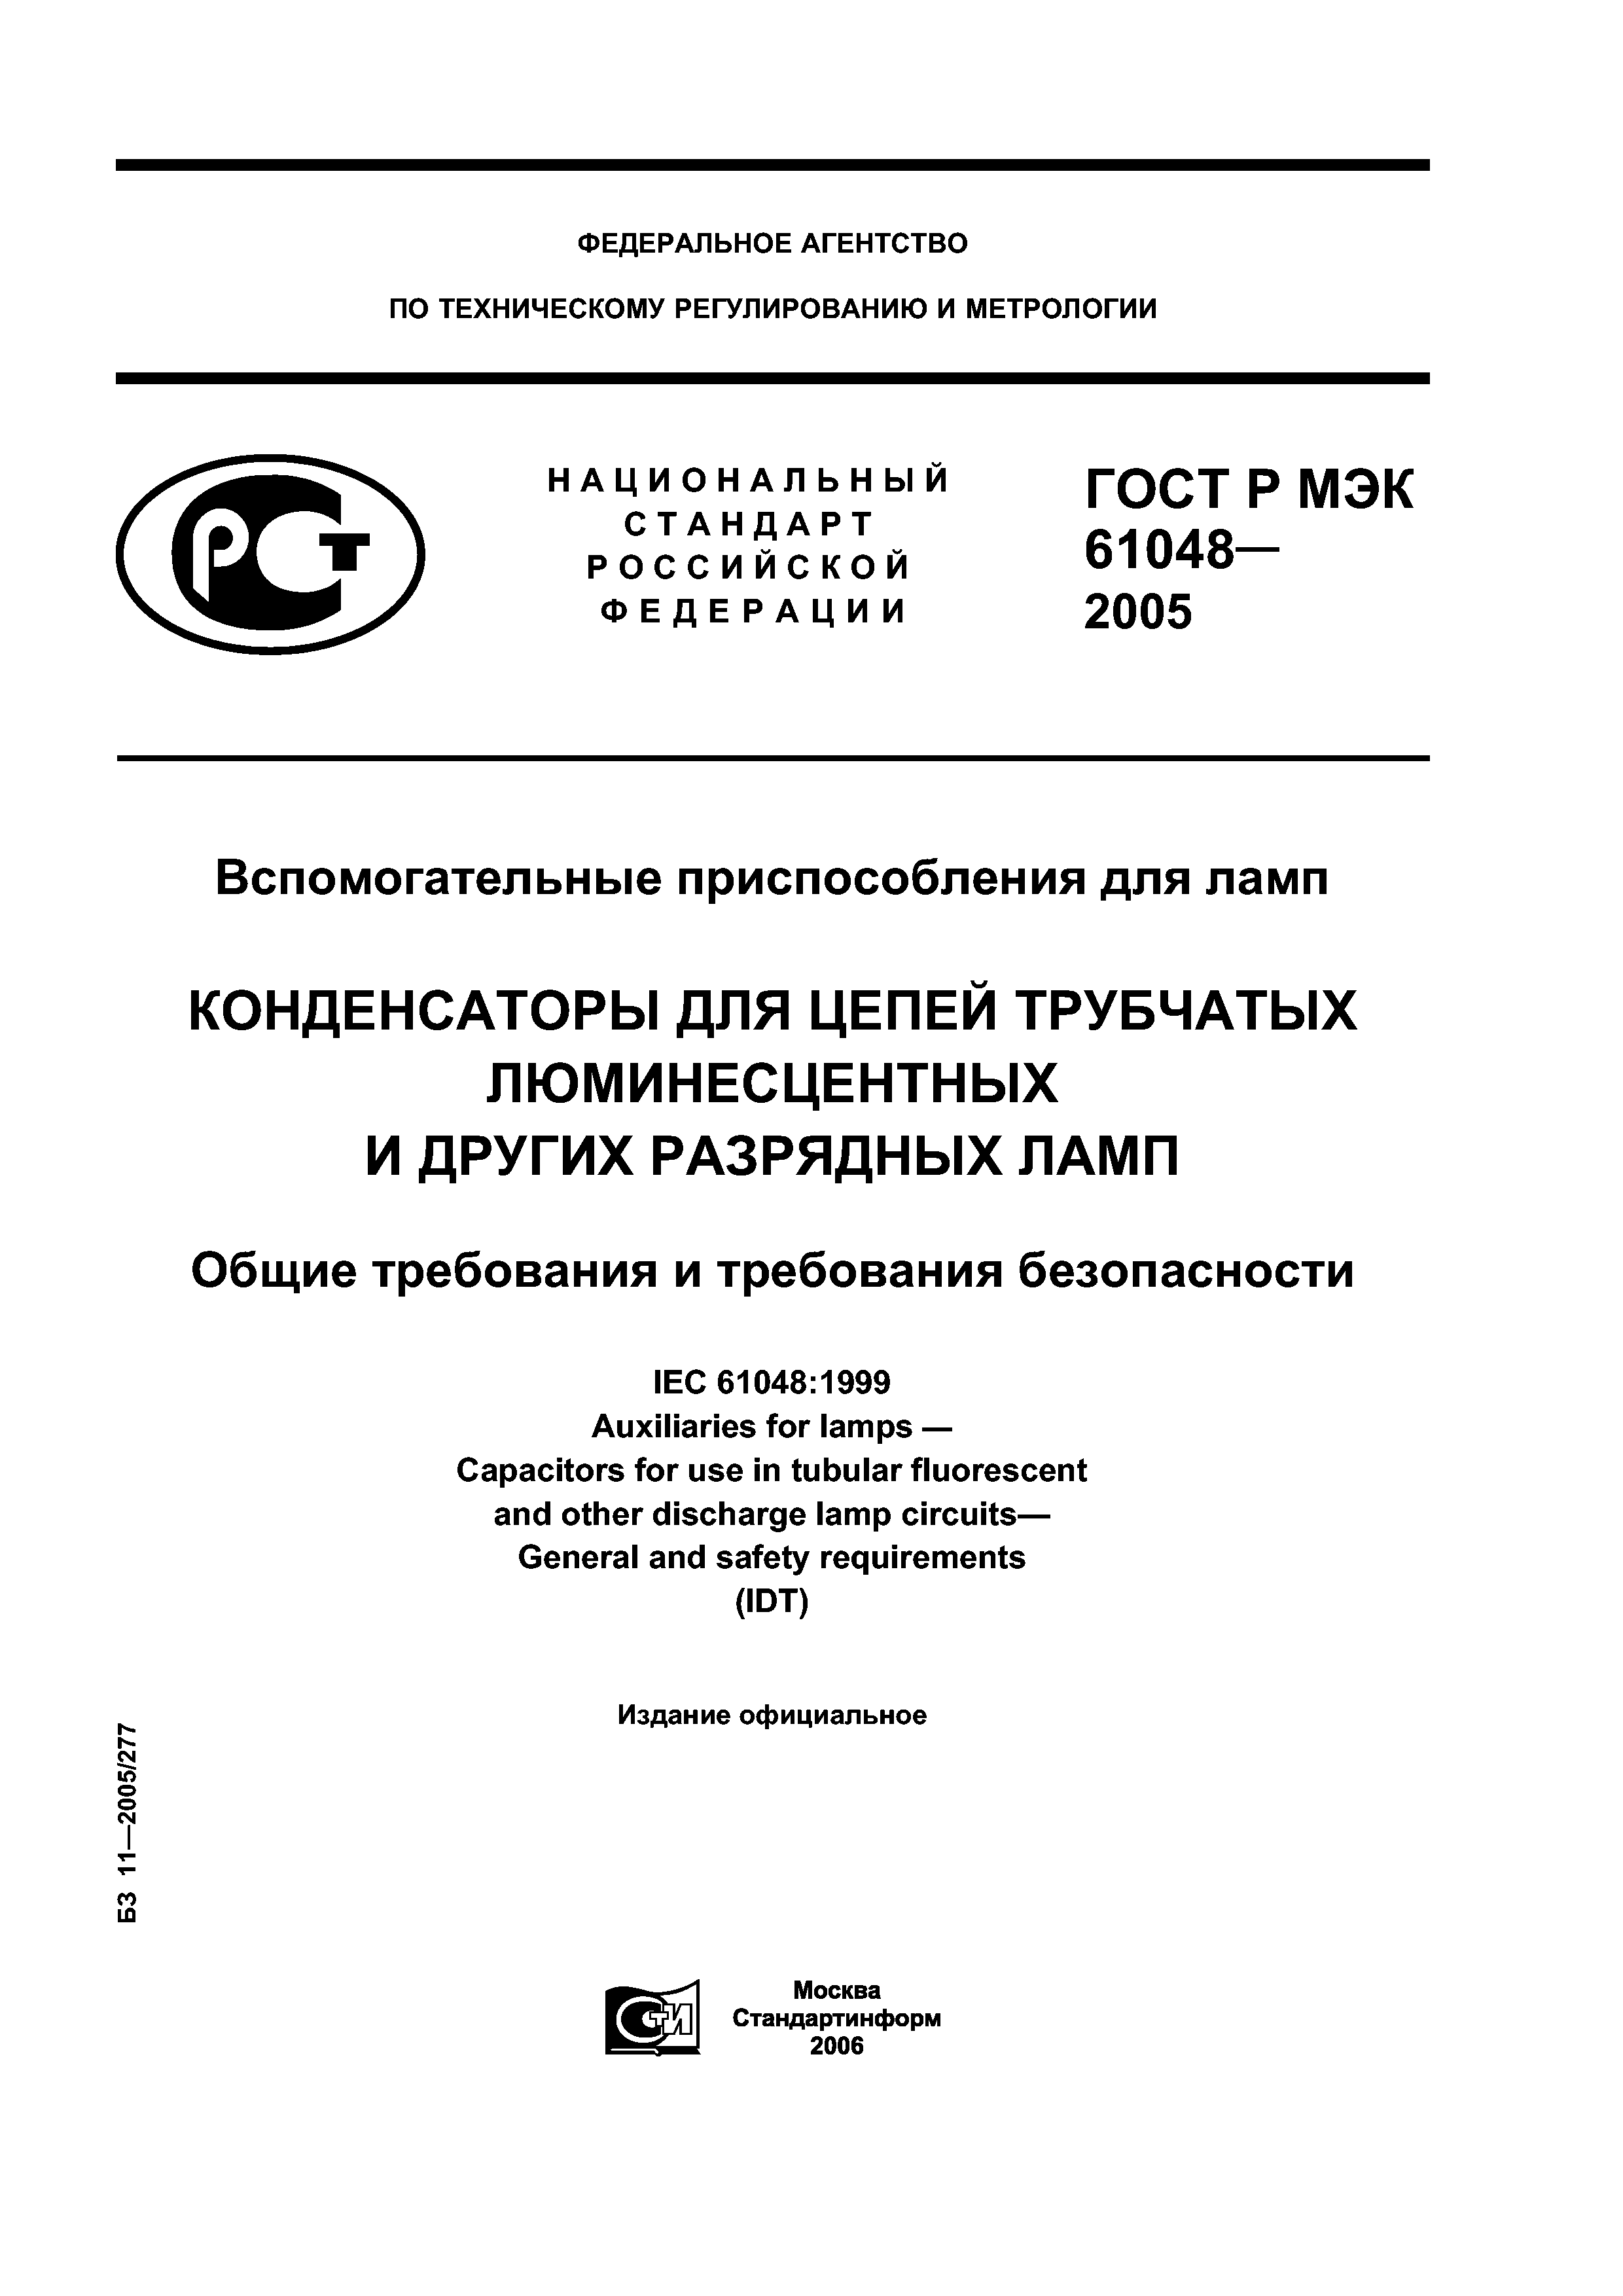 ГОСТ Р МЭК 61048-2005